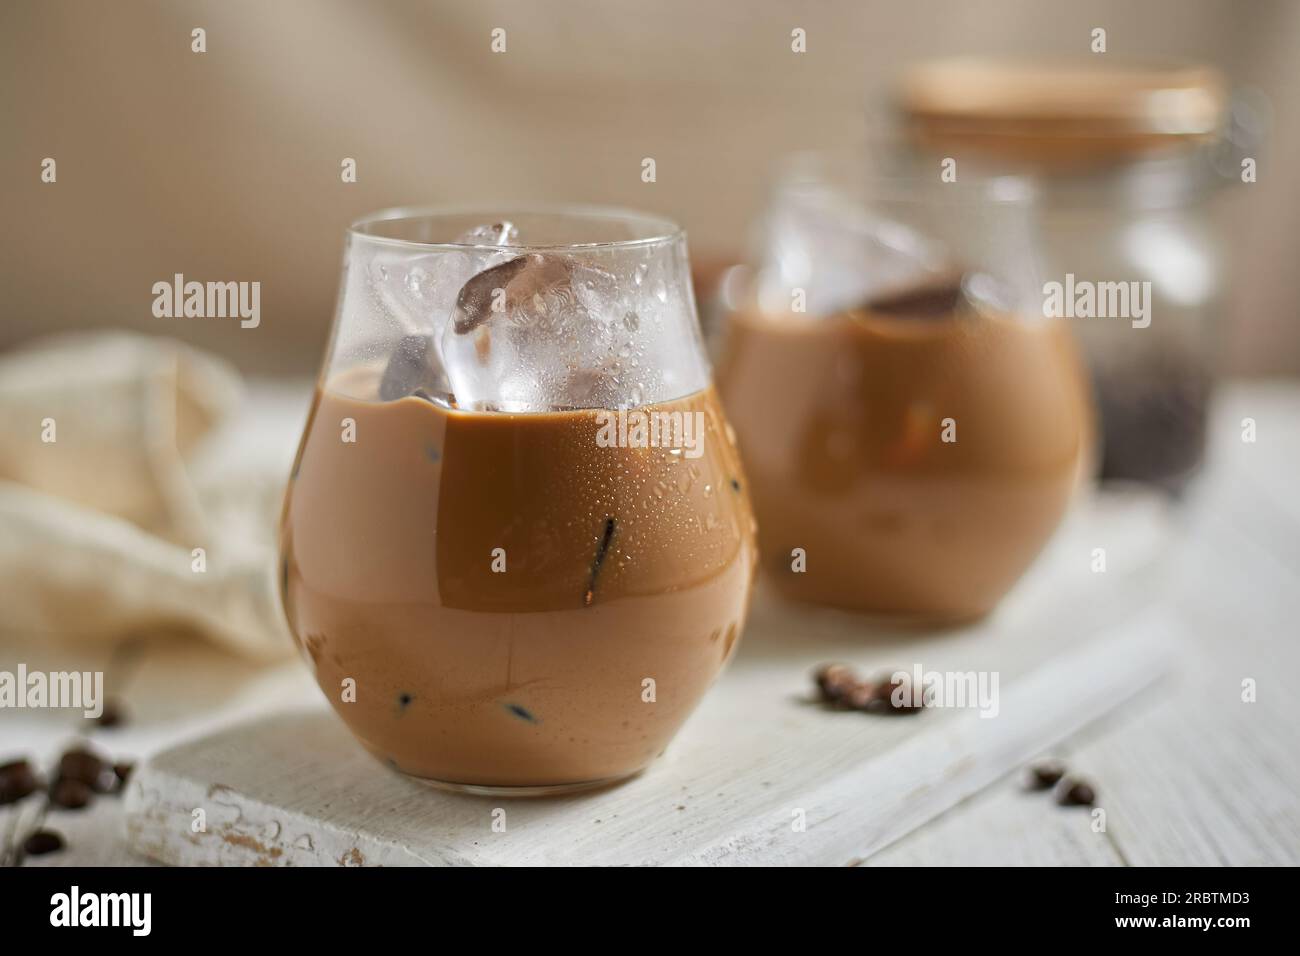 https://c8.alamy.com/compes/2rbtmd3/refrescante-cafe-con-leche-helado-en-un-vaso-enfoque-selectivo-2rbtmd3.jpg